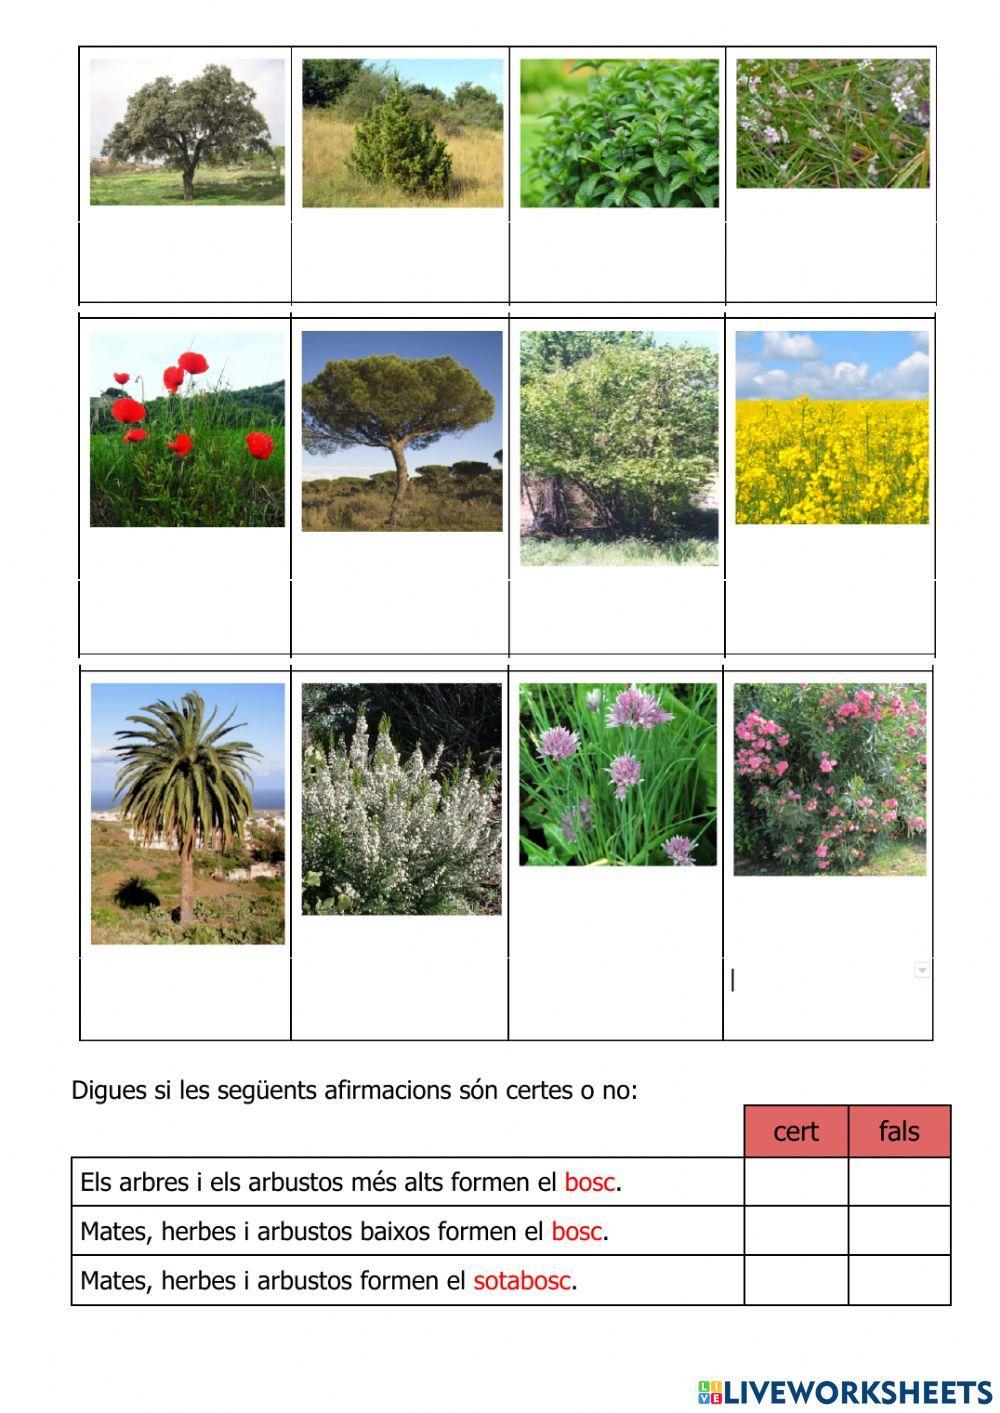 Plantes: classificació per tija